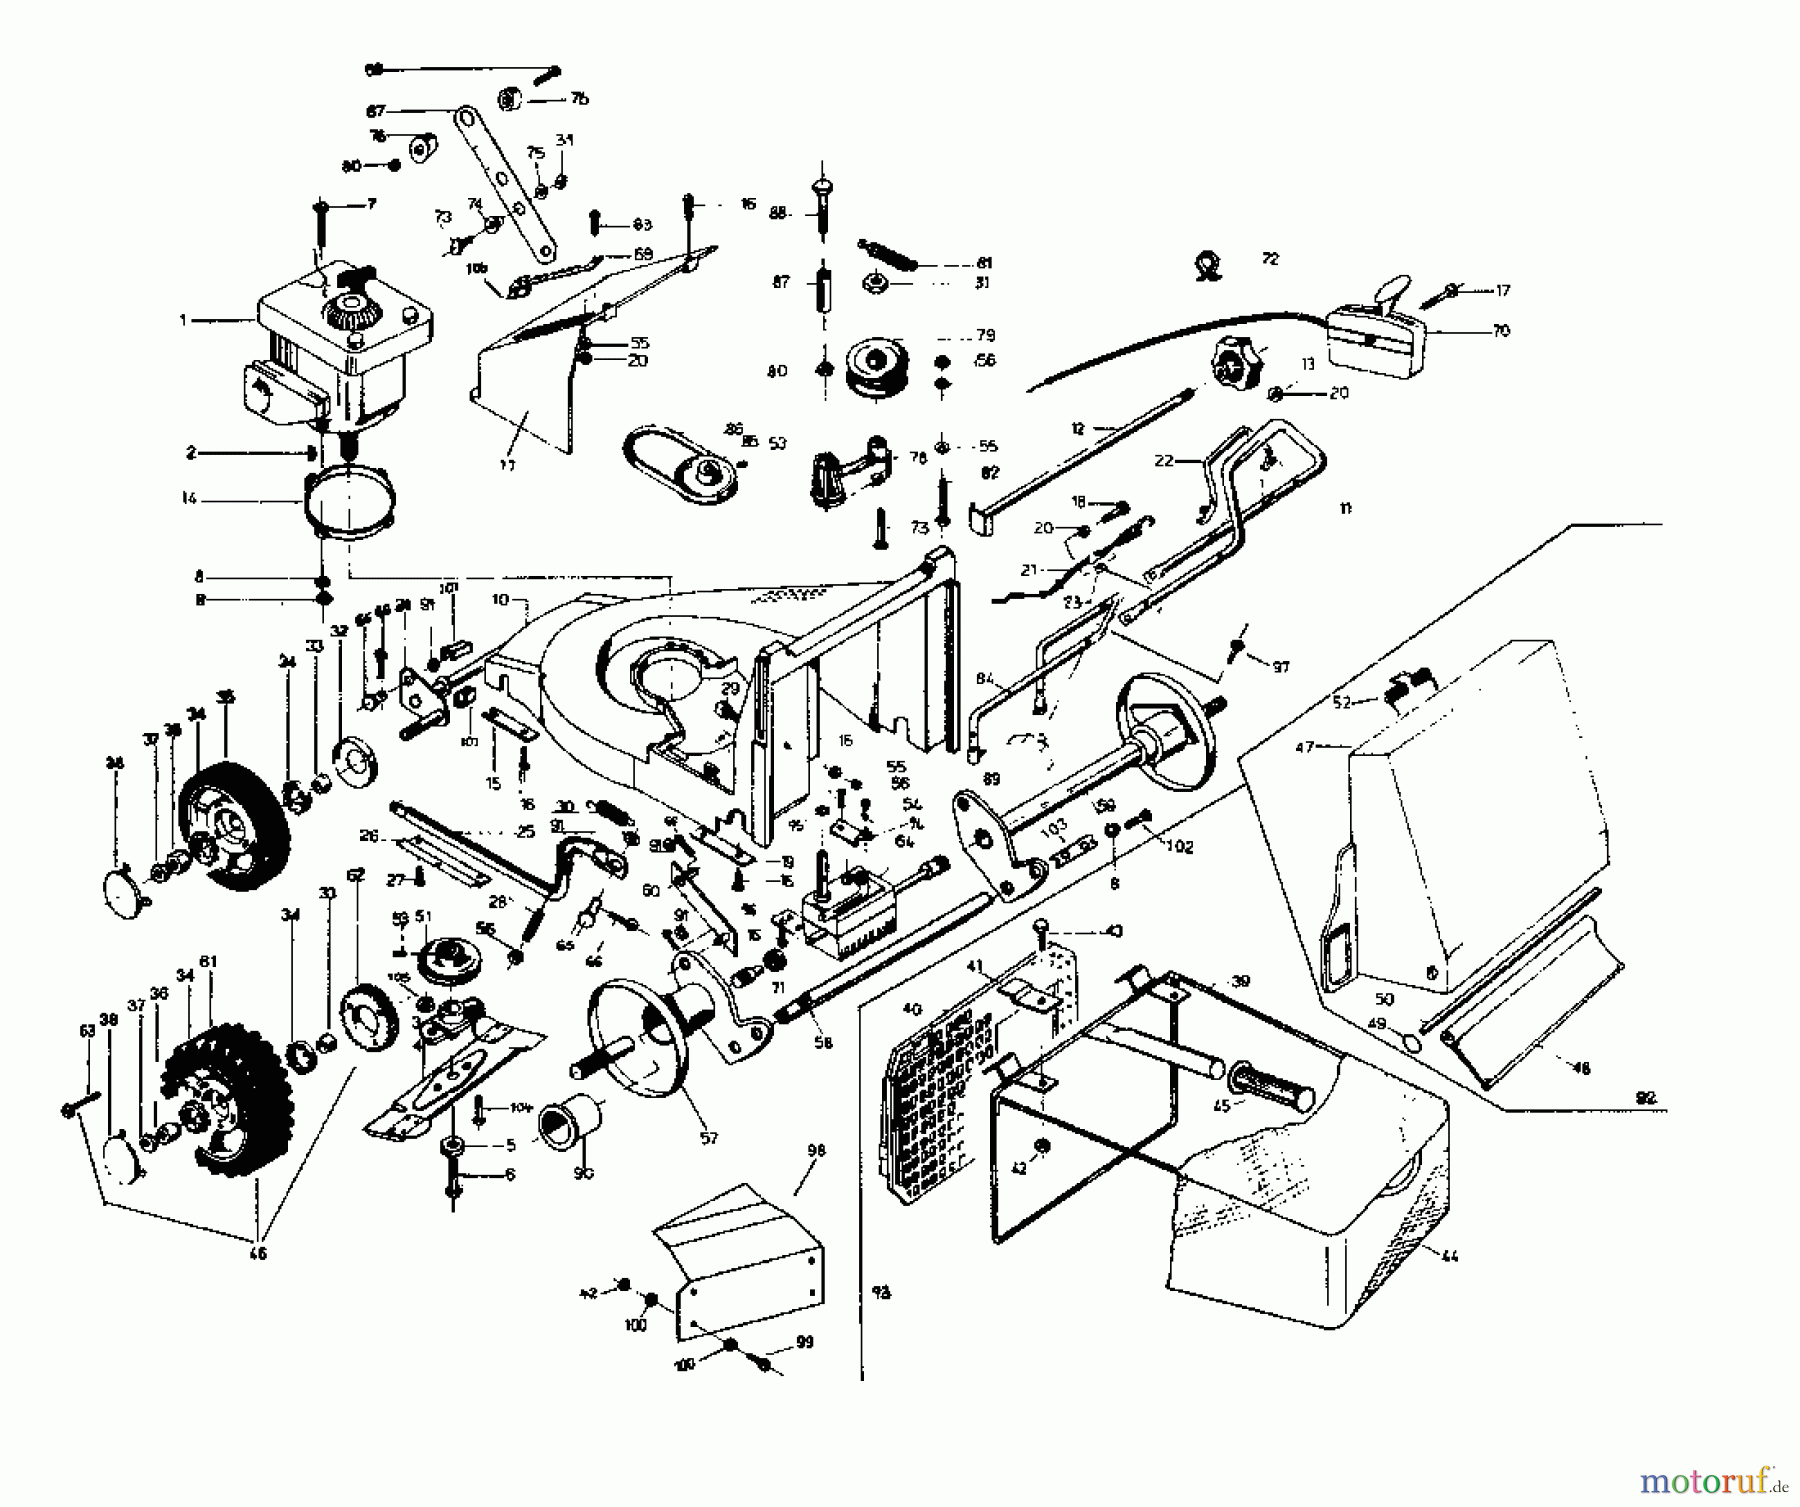  Rotaro Motormäher mit Antrieb ROTARO  48 SE 189-0154  (1989) Grundgerät